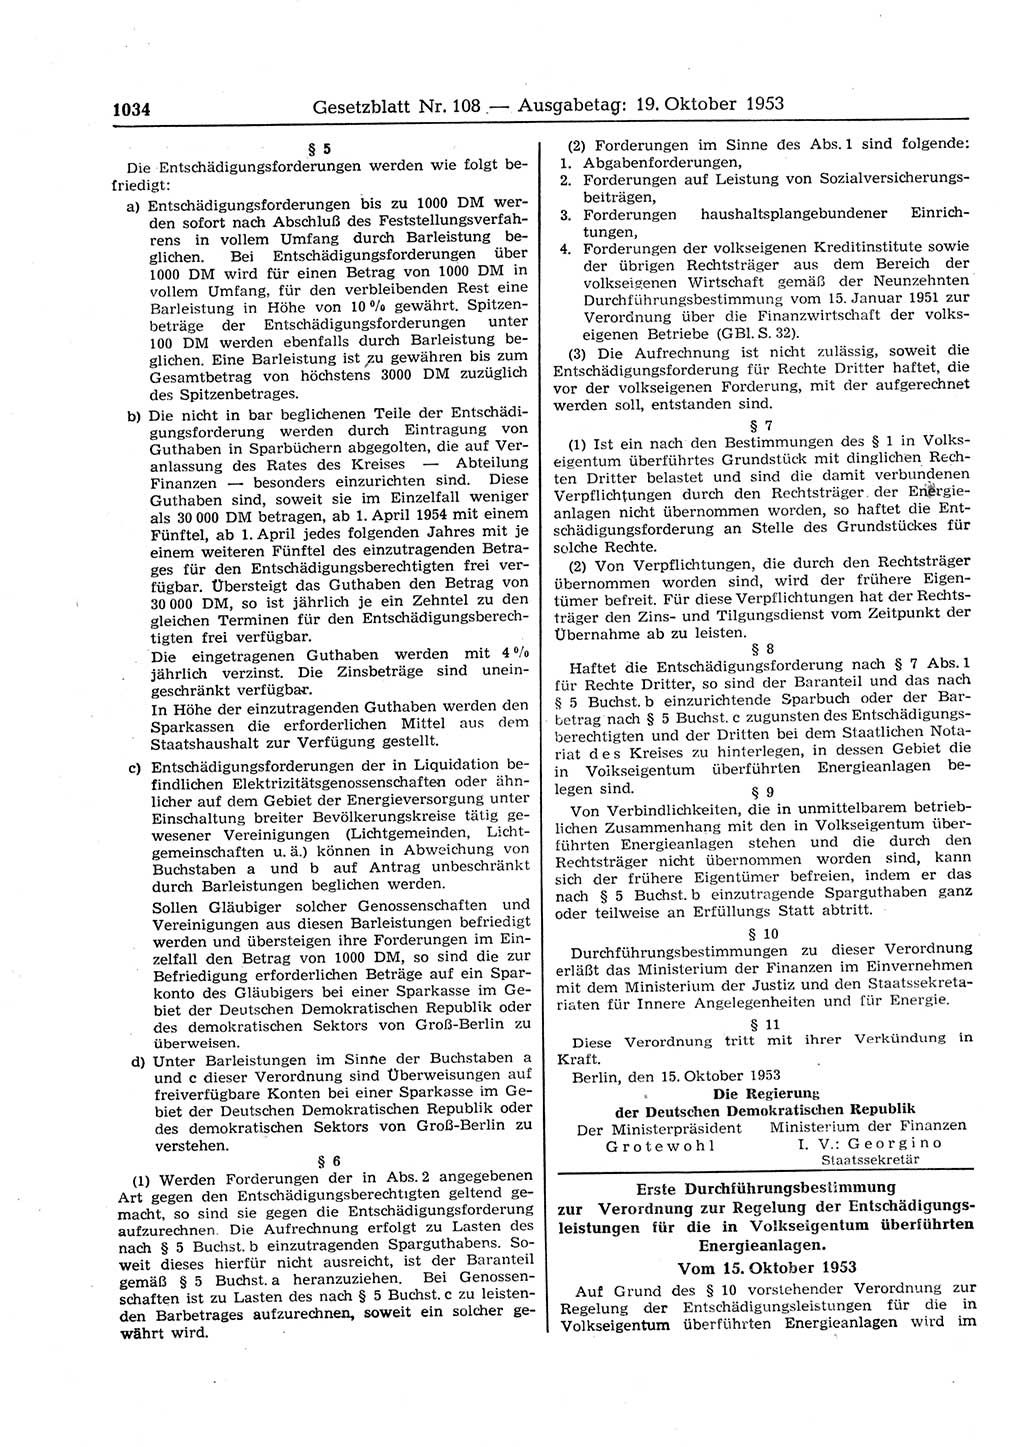 Gesetzblatt (GBl.) der Deutschen Demokratischen Republik (DDR) 1953, Seite 1034 (GBl. DDR 1953, S. 1034)